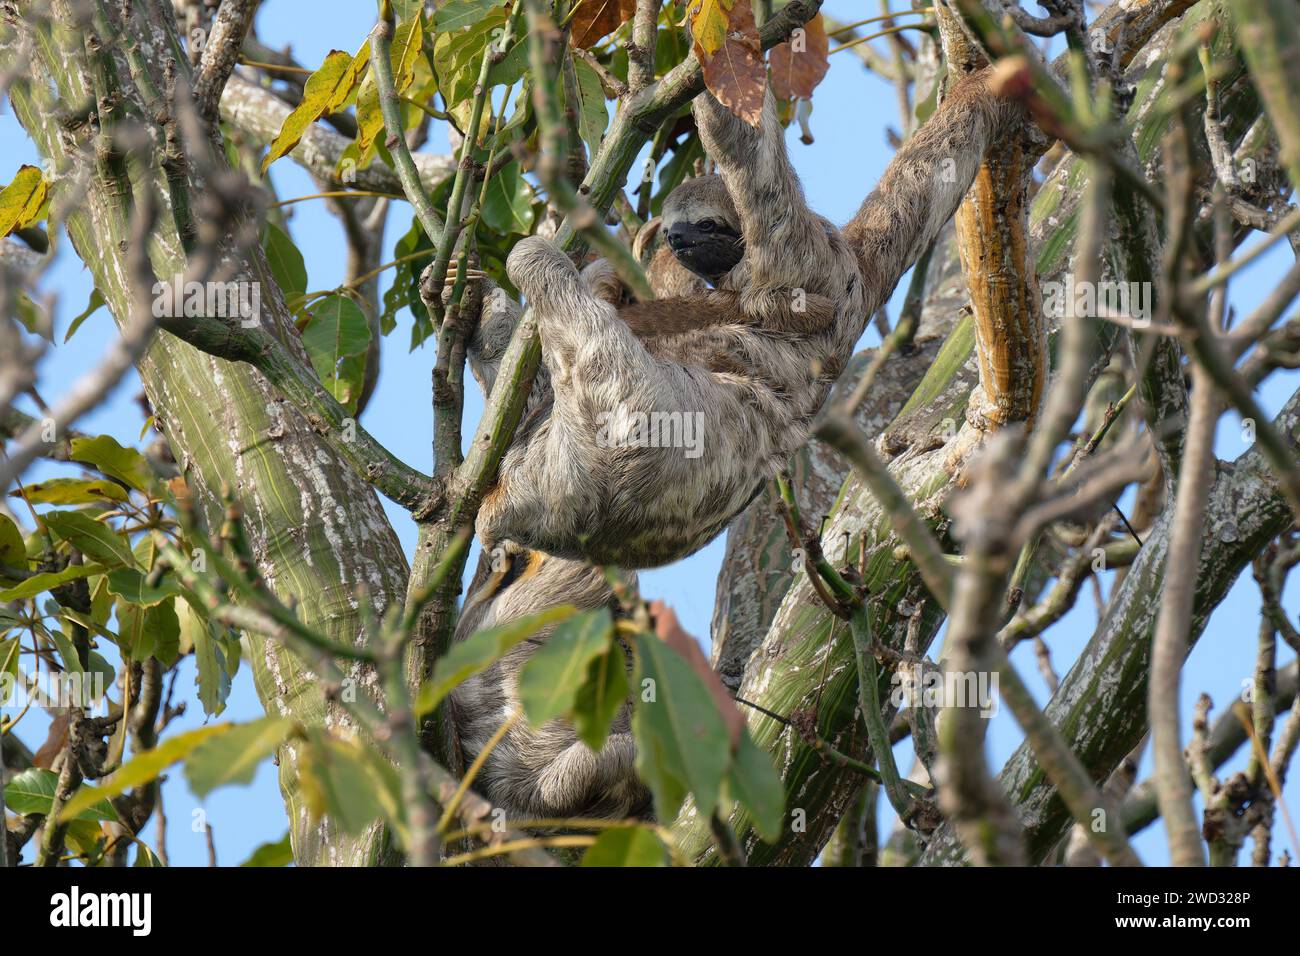 Gorge brune à trois doigts, Bradypus variegatus, dans un arbre, bassin de l'Amazonie, Brésil Banque D'Images